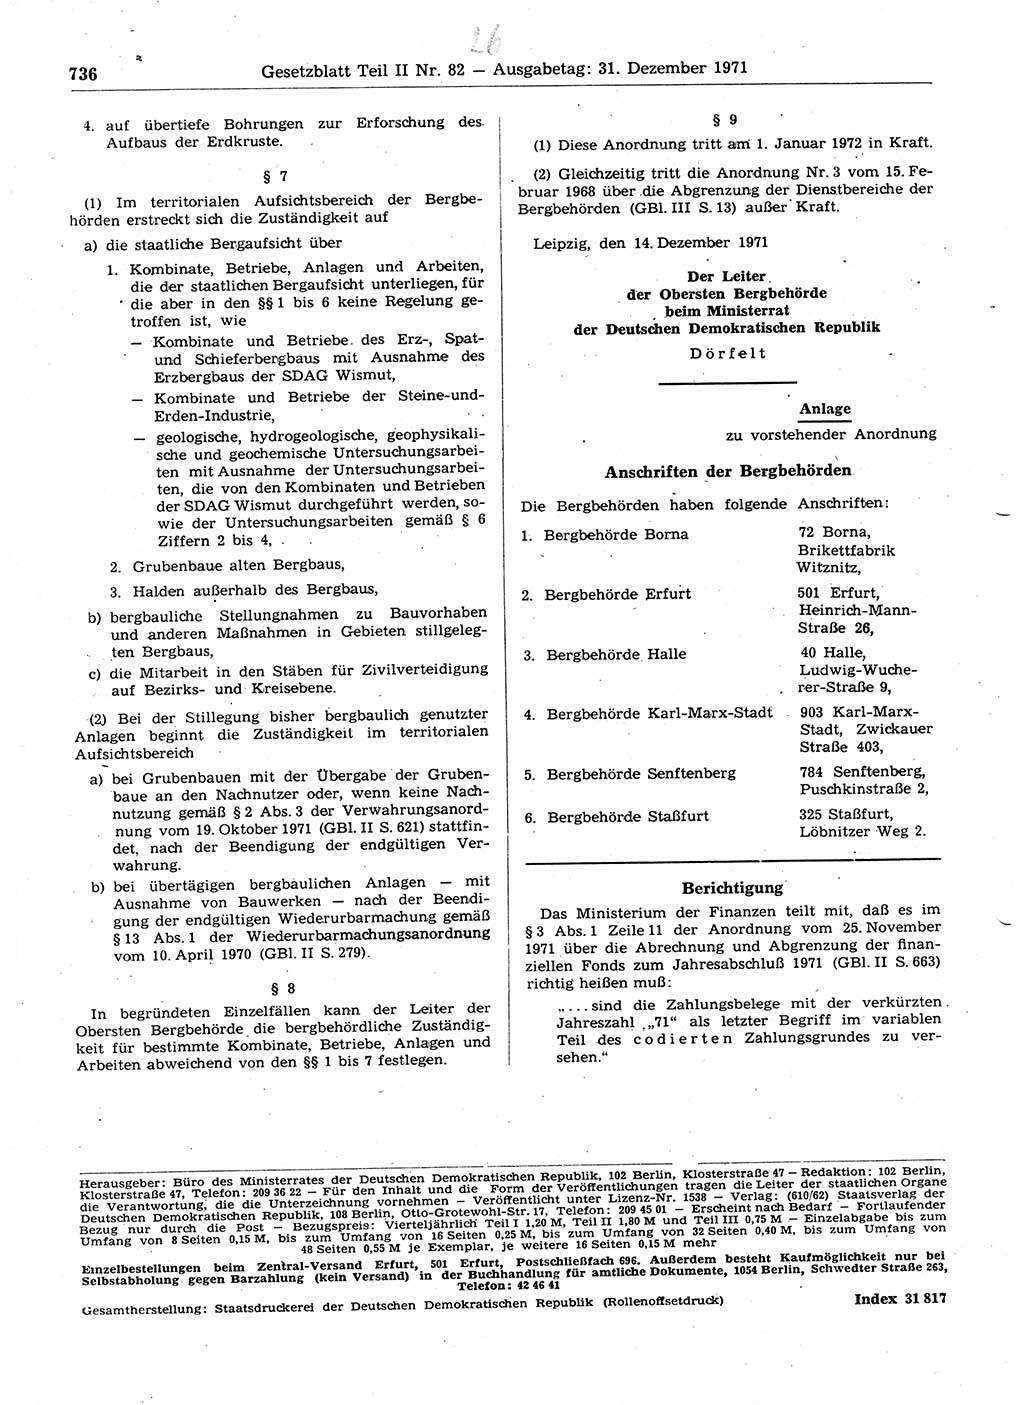 Gesetzblatt (GBl.) der Deutschen Demokratischen Republik (DDR) Teil ⅠⅠ 1971, Seite 736 (GBl. DDR ⅠⅠ 1971, S. 736)